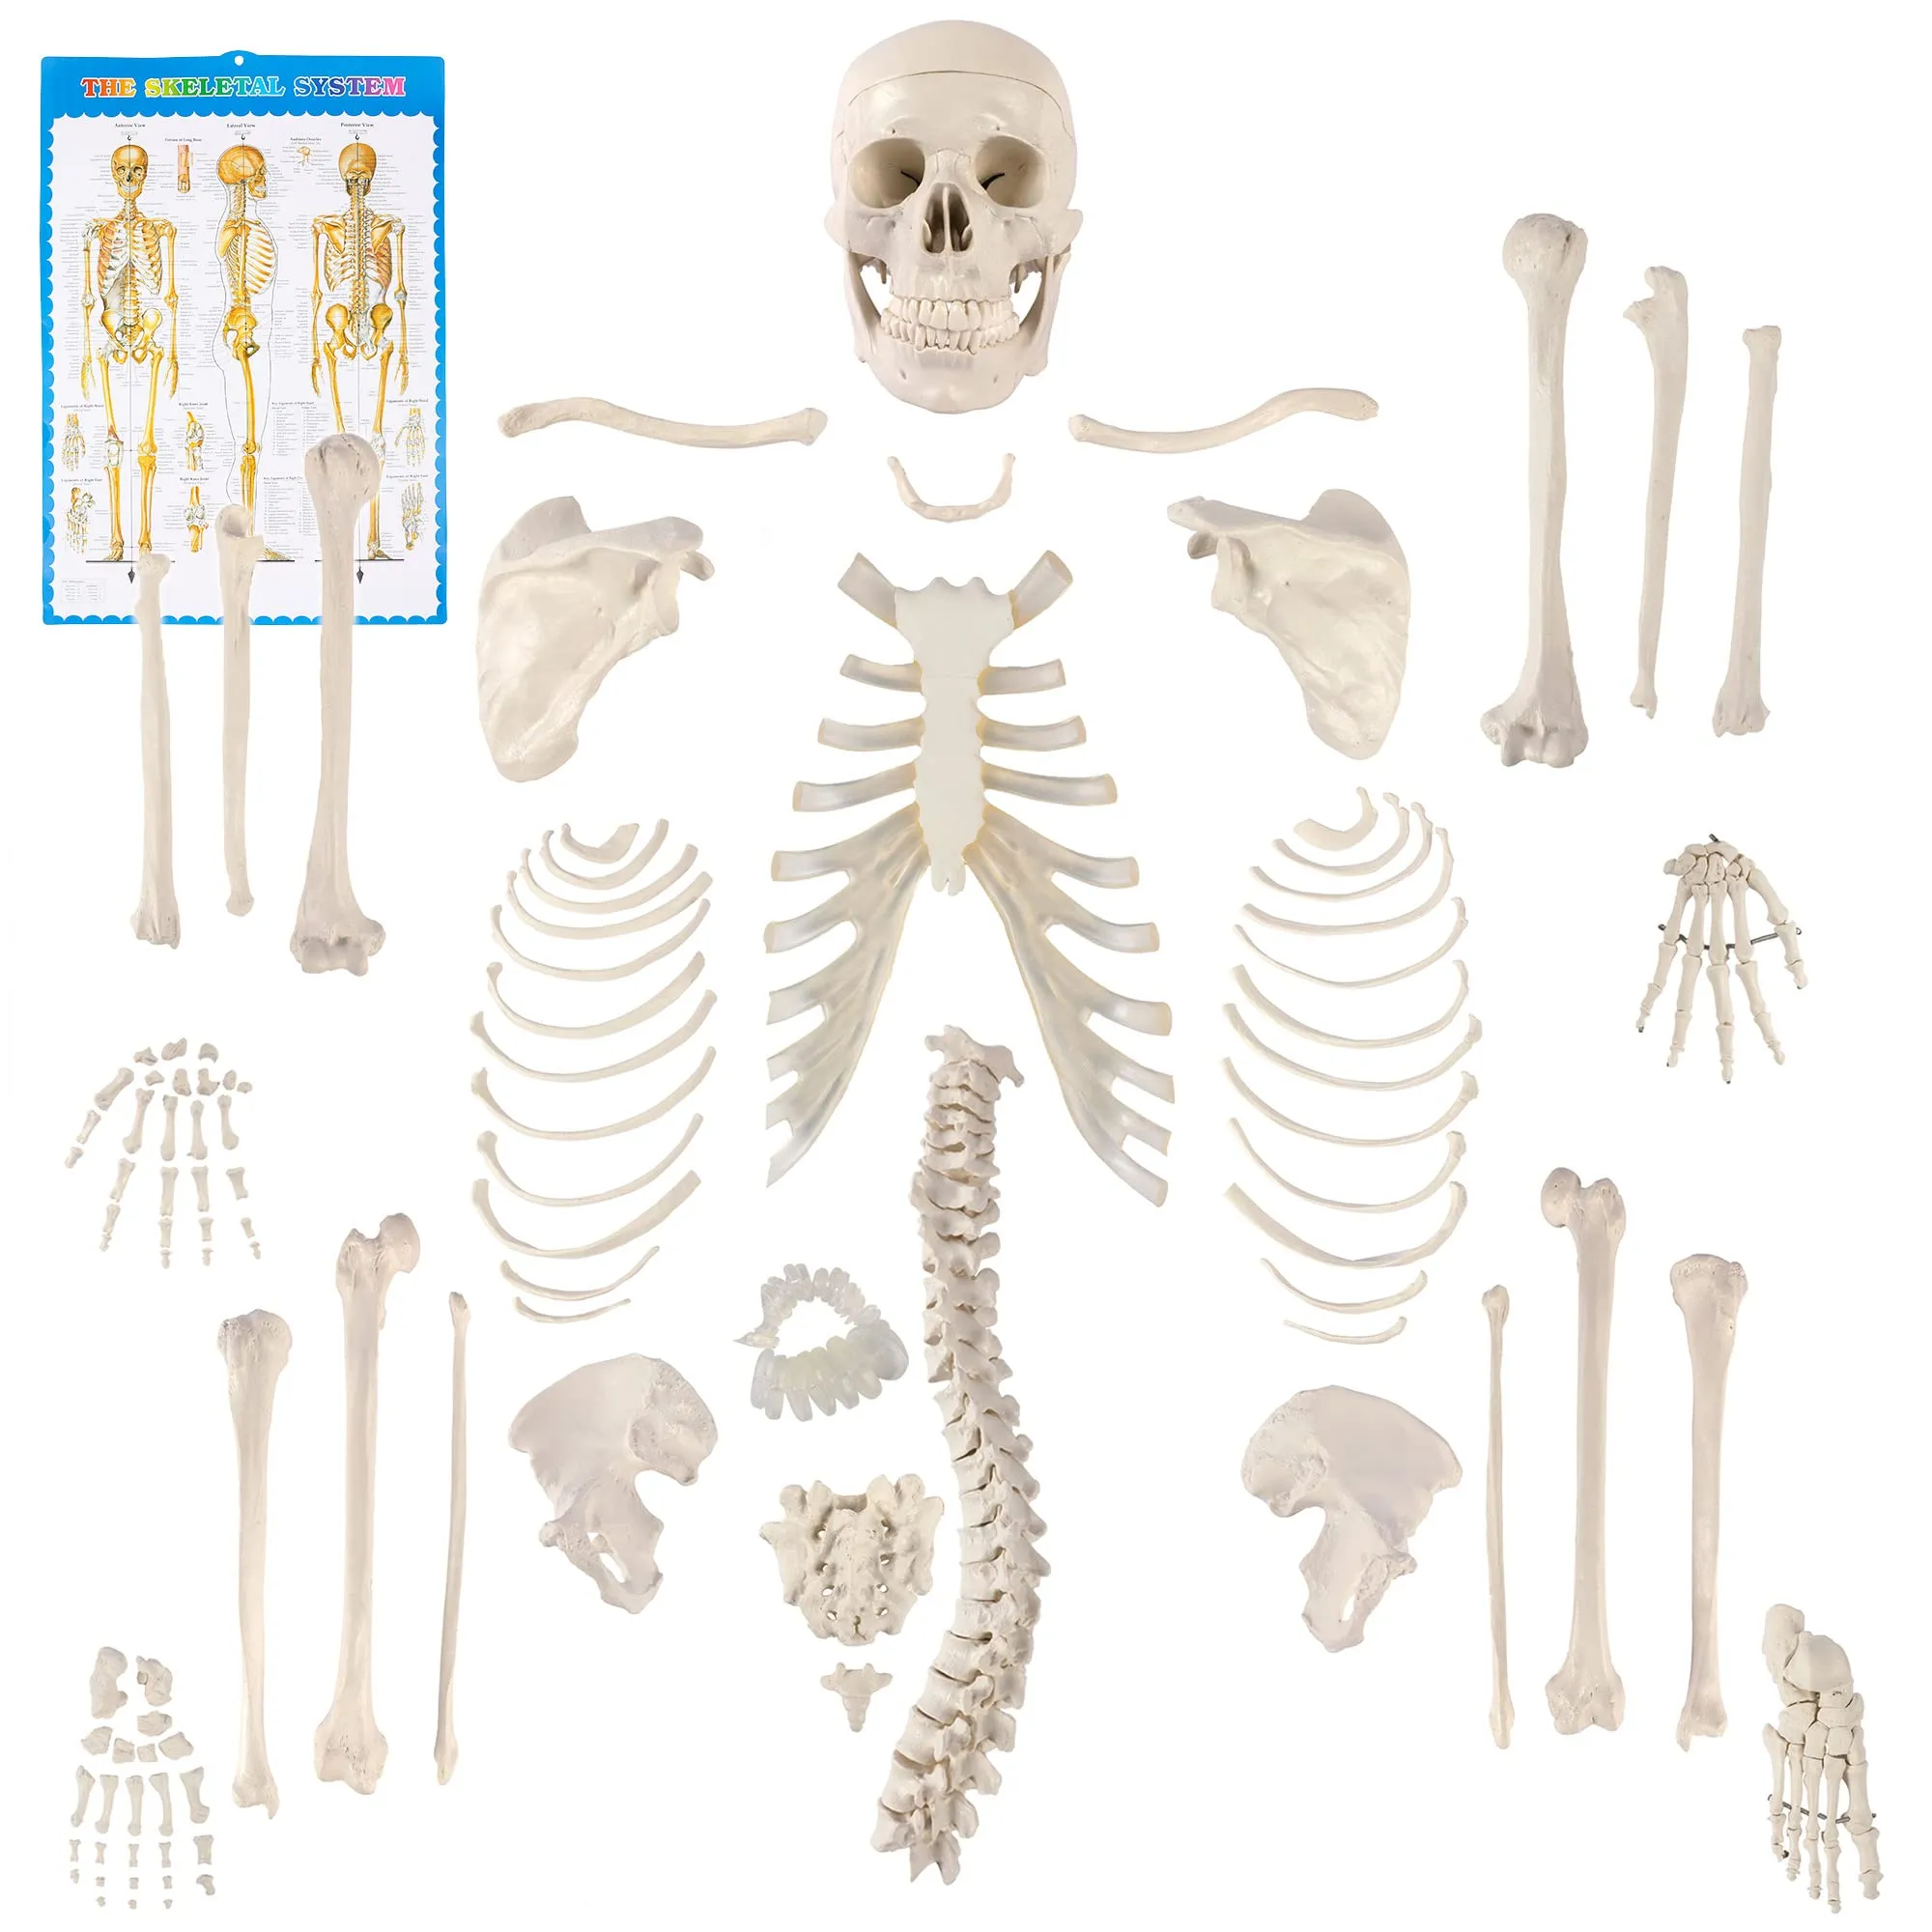 Amazon.com: Houseables Esqueleto humano desarticulado, Modelo anatómico  completo sin ensamblar, tamaño real, 62.2 in de altura, plástico, w/poster,  cráneo, huesos, mano y pie articulados, estudio del sistema esquelético,  educativo : Industrial y